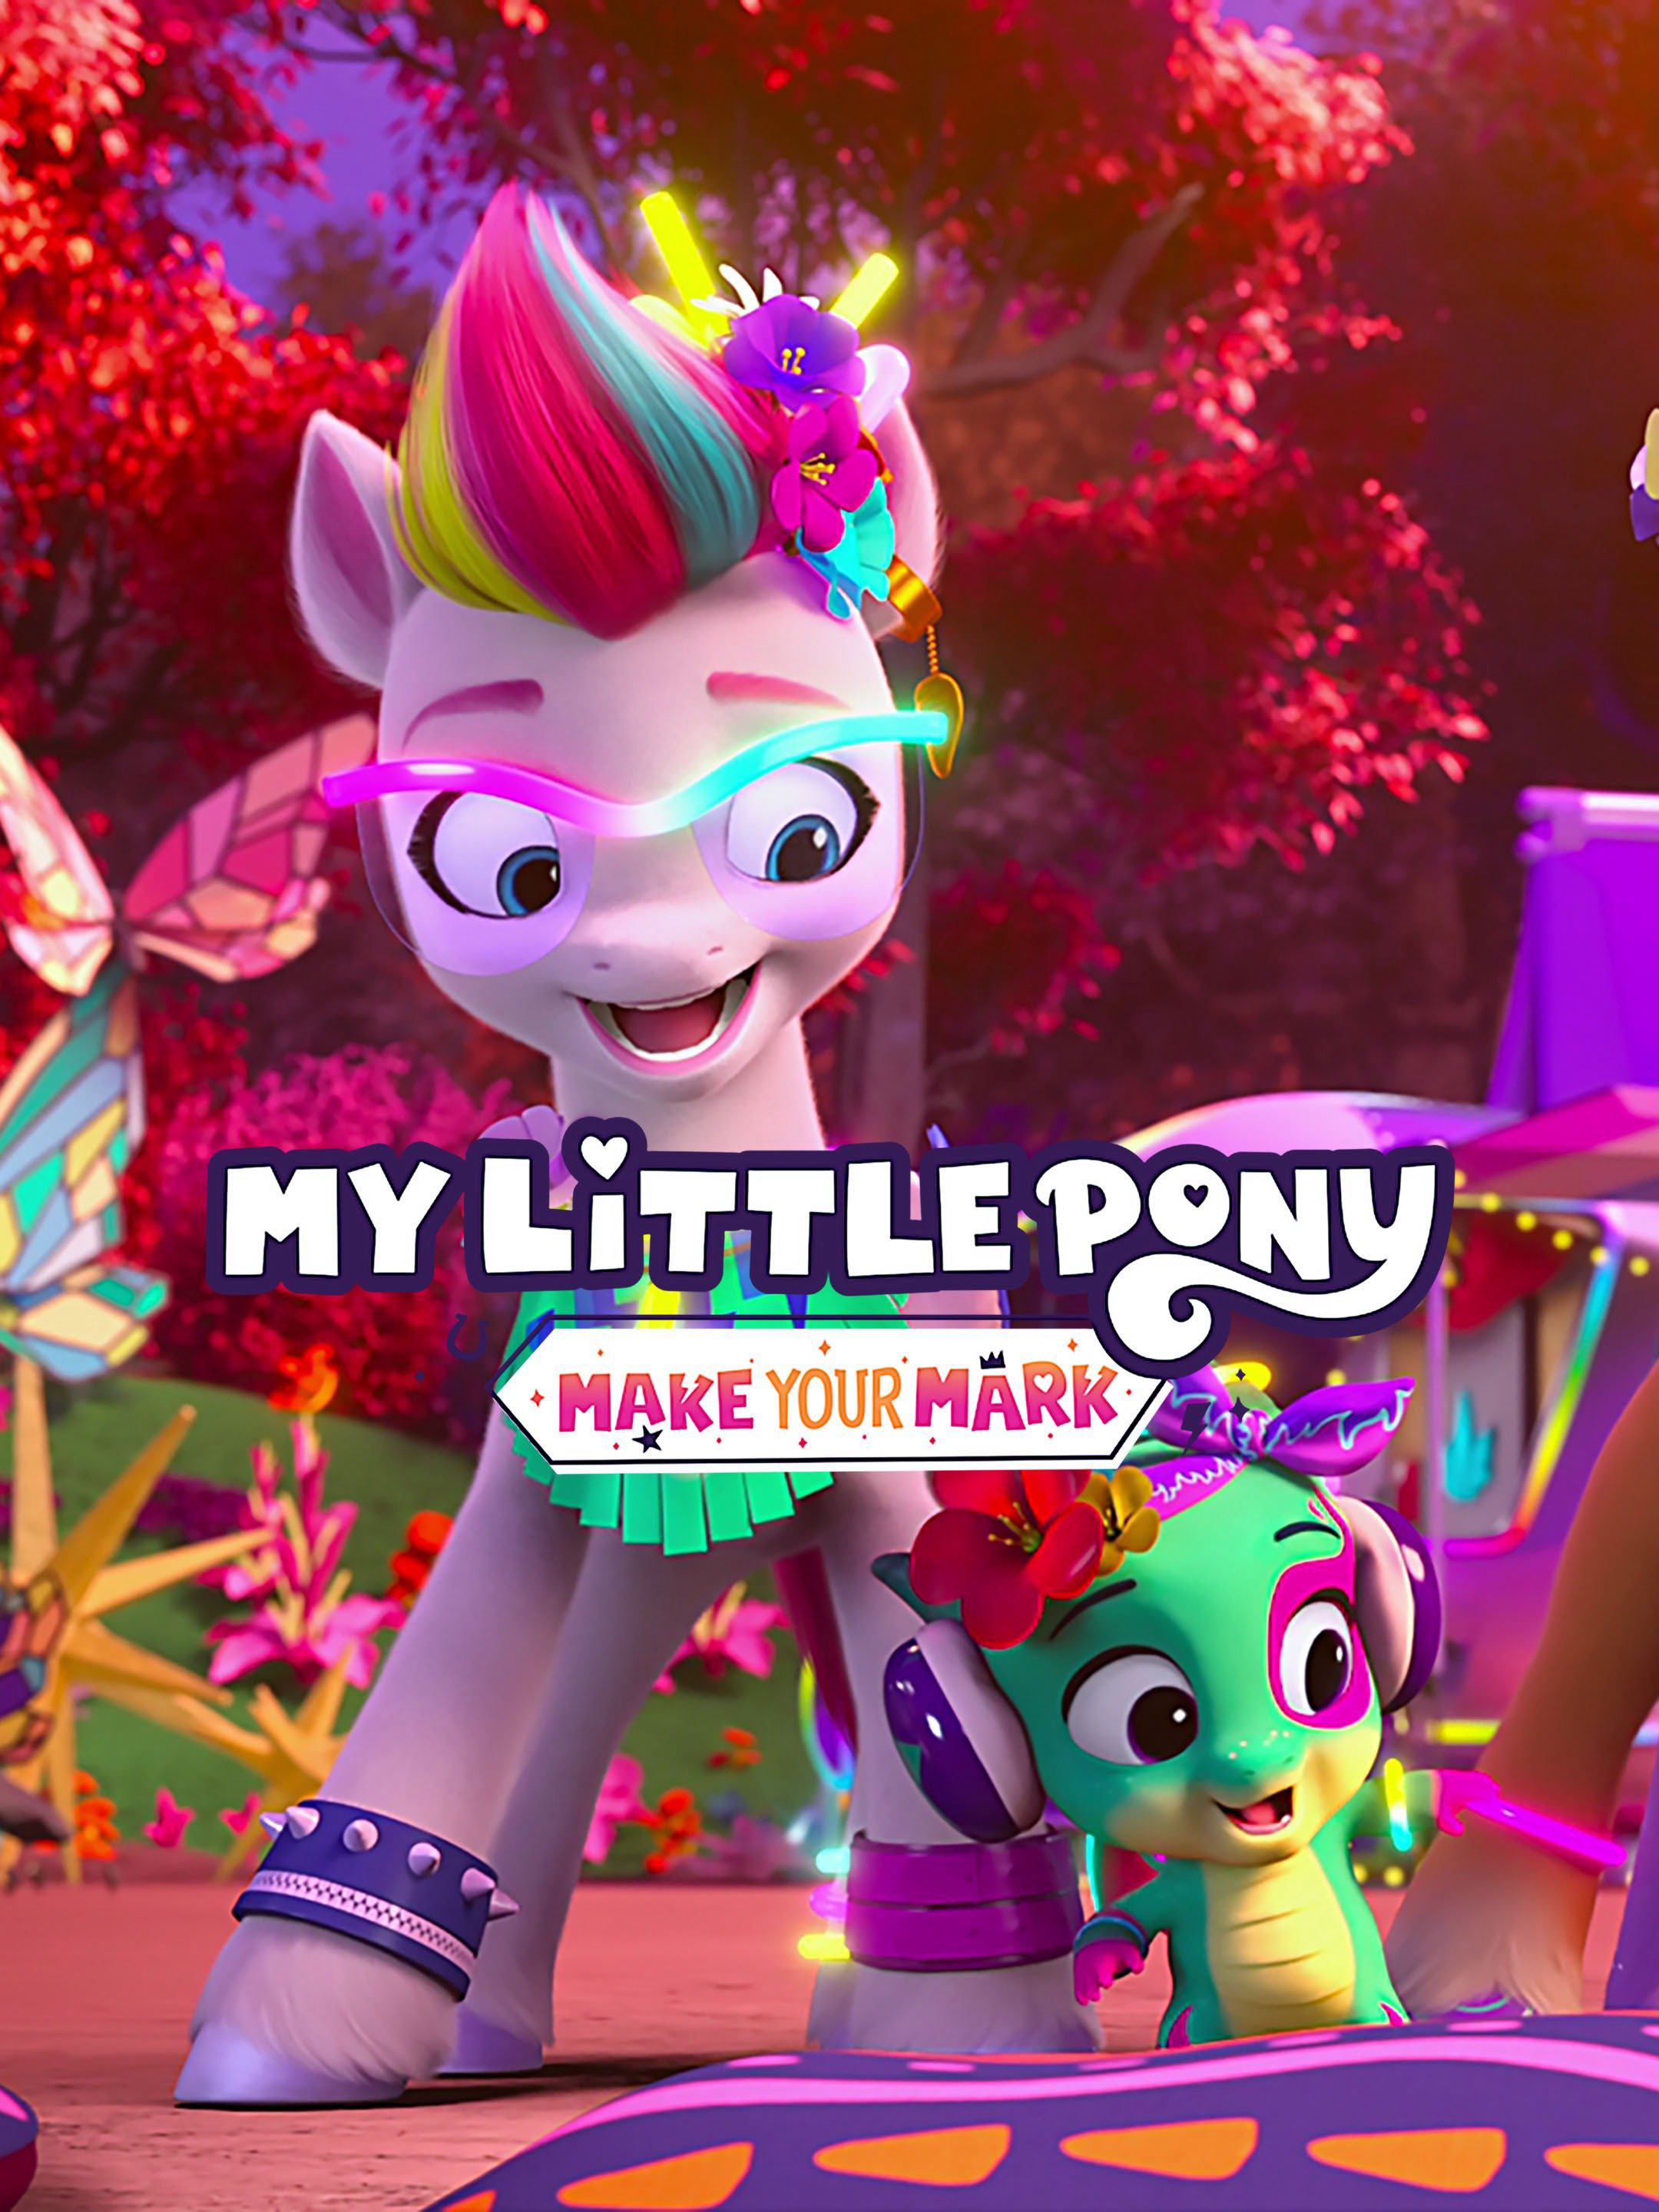 Xem Phim Pony bé nhỏ: Tạo dấu ấn riêng (Phần 4) (My Little Pony: Make Your Mark (Season 4))